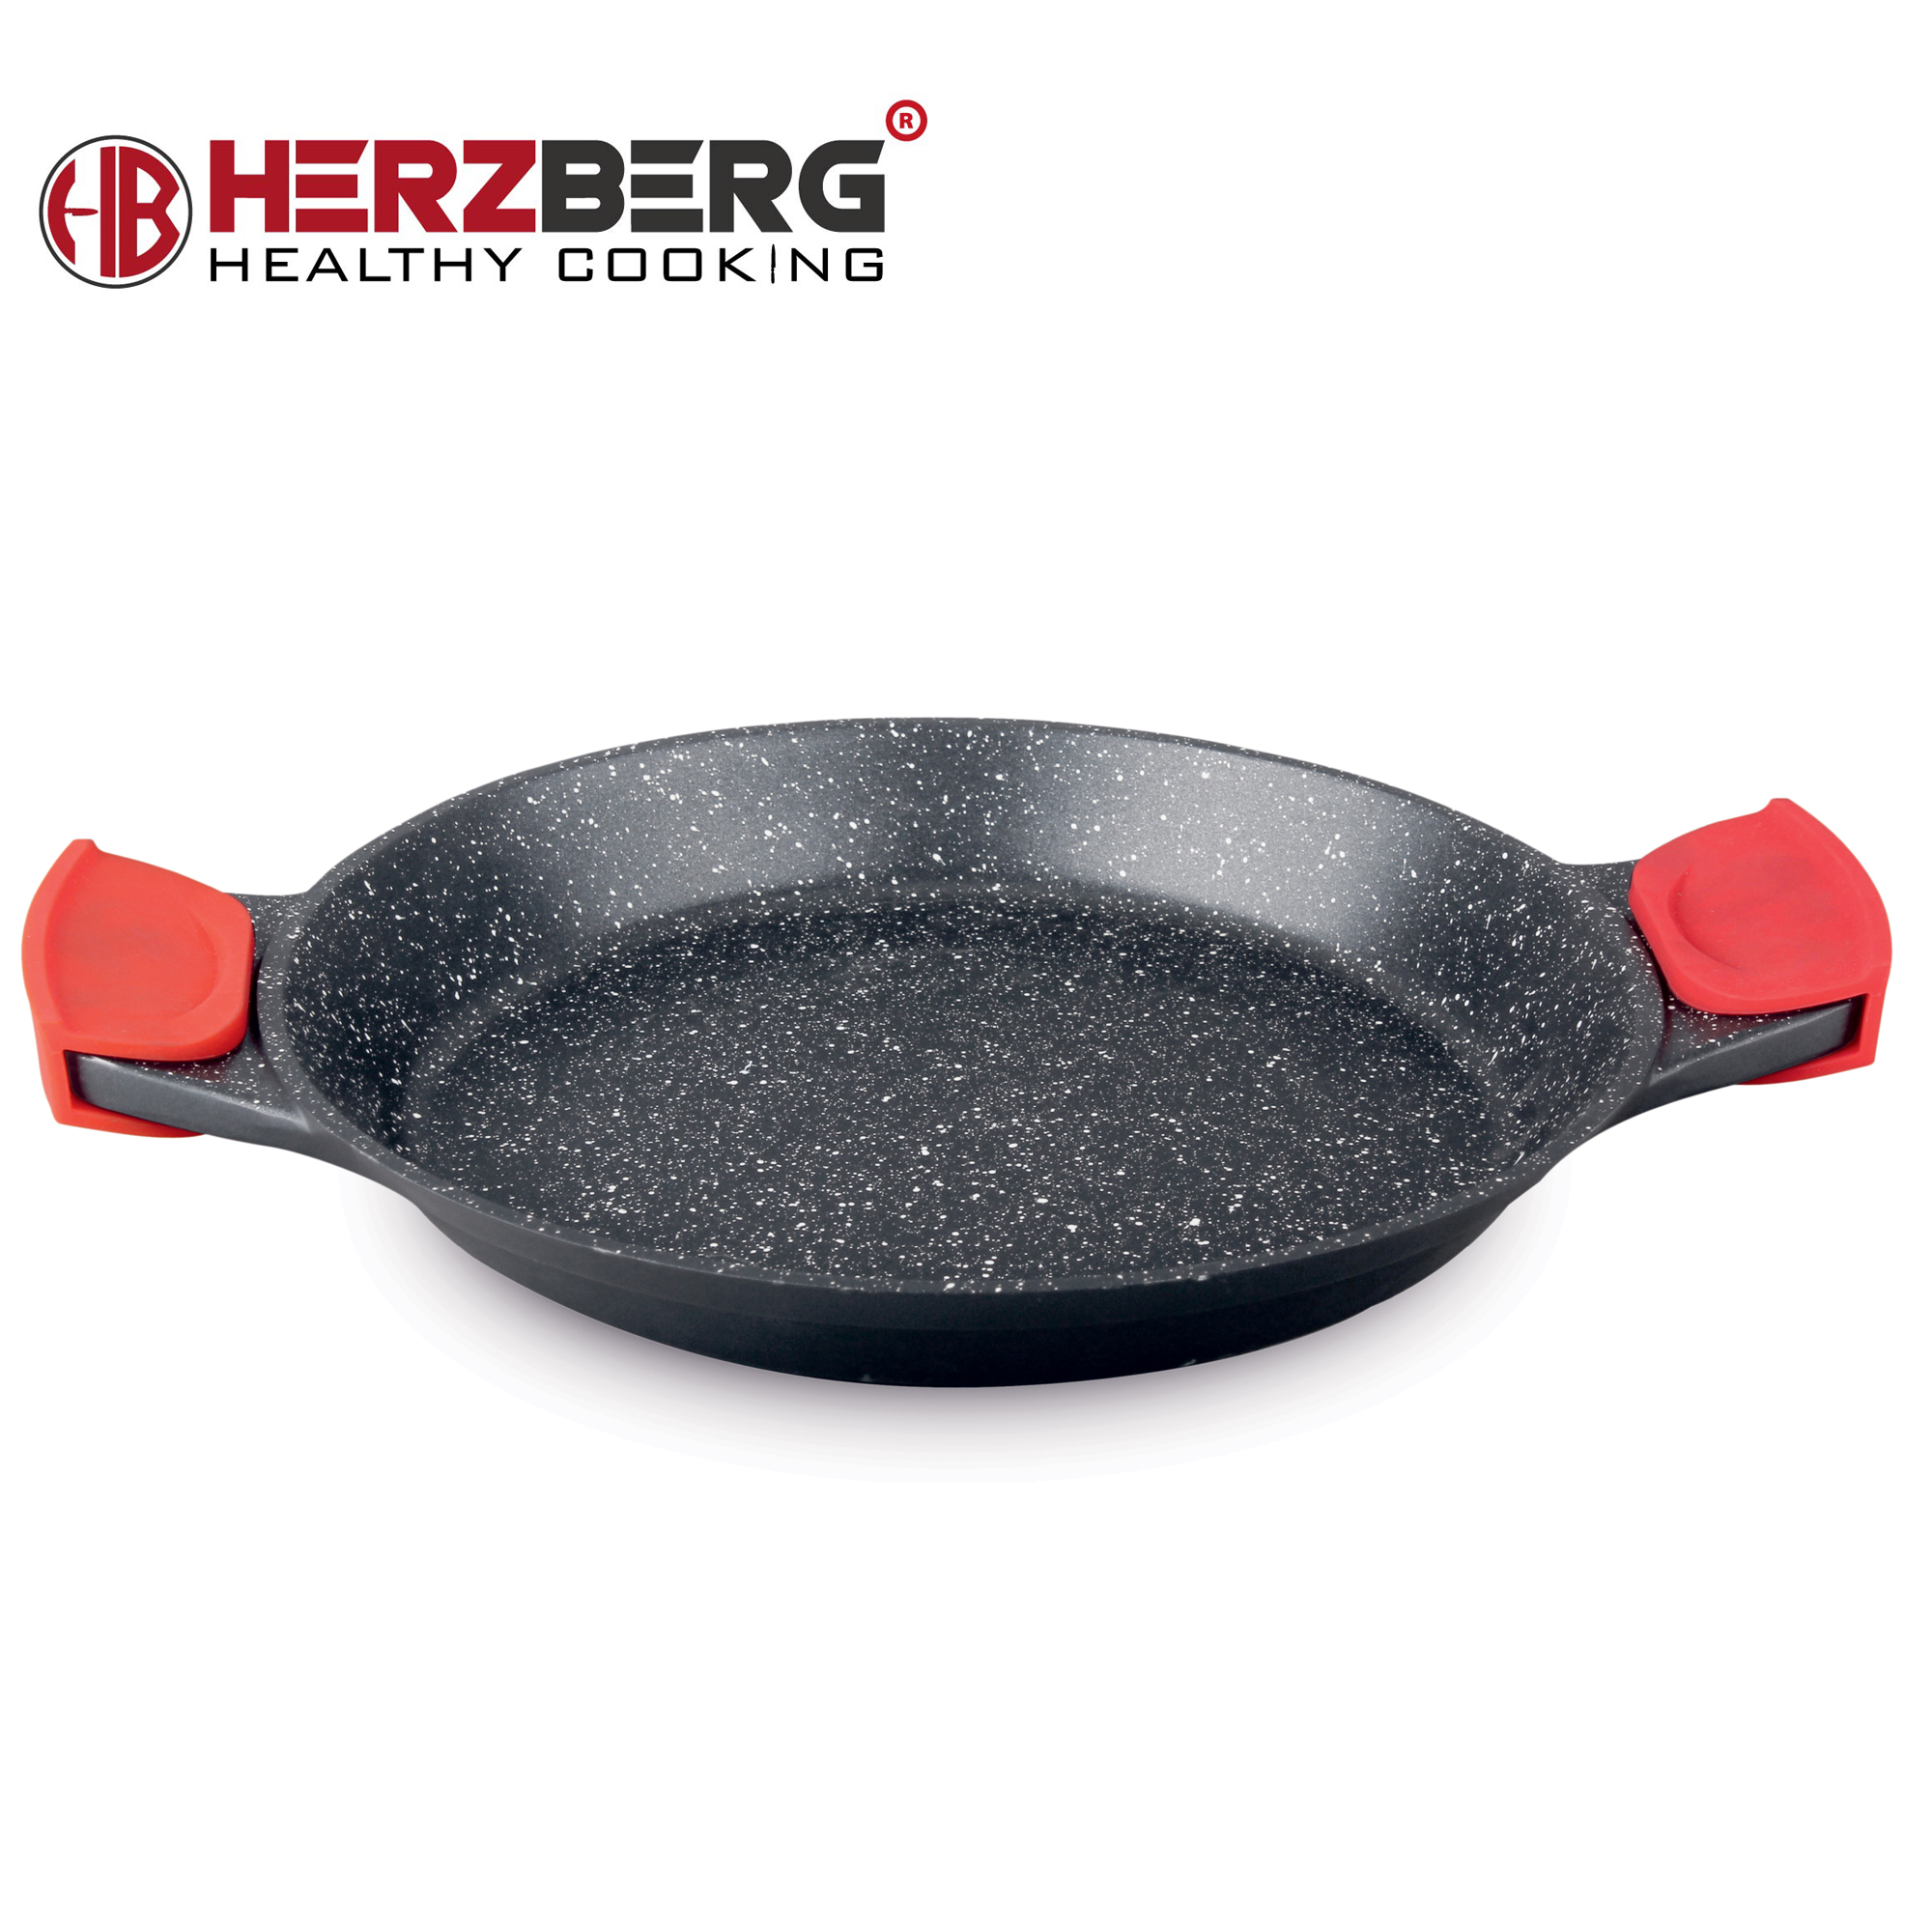 Herzberg-HG-7132PP-Poele-a-Paella-de-32-cm-HG-7132PP-2